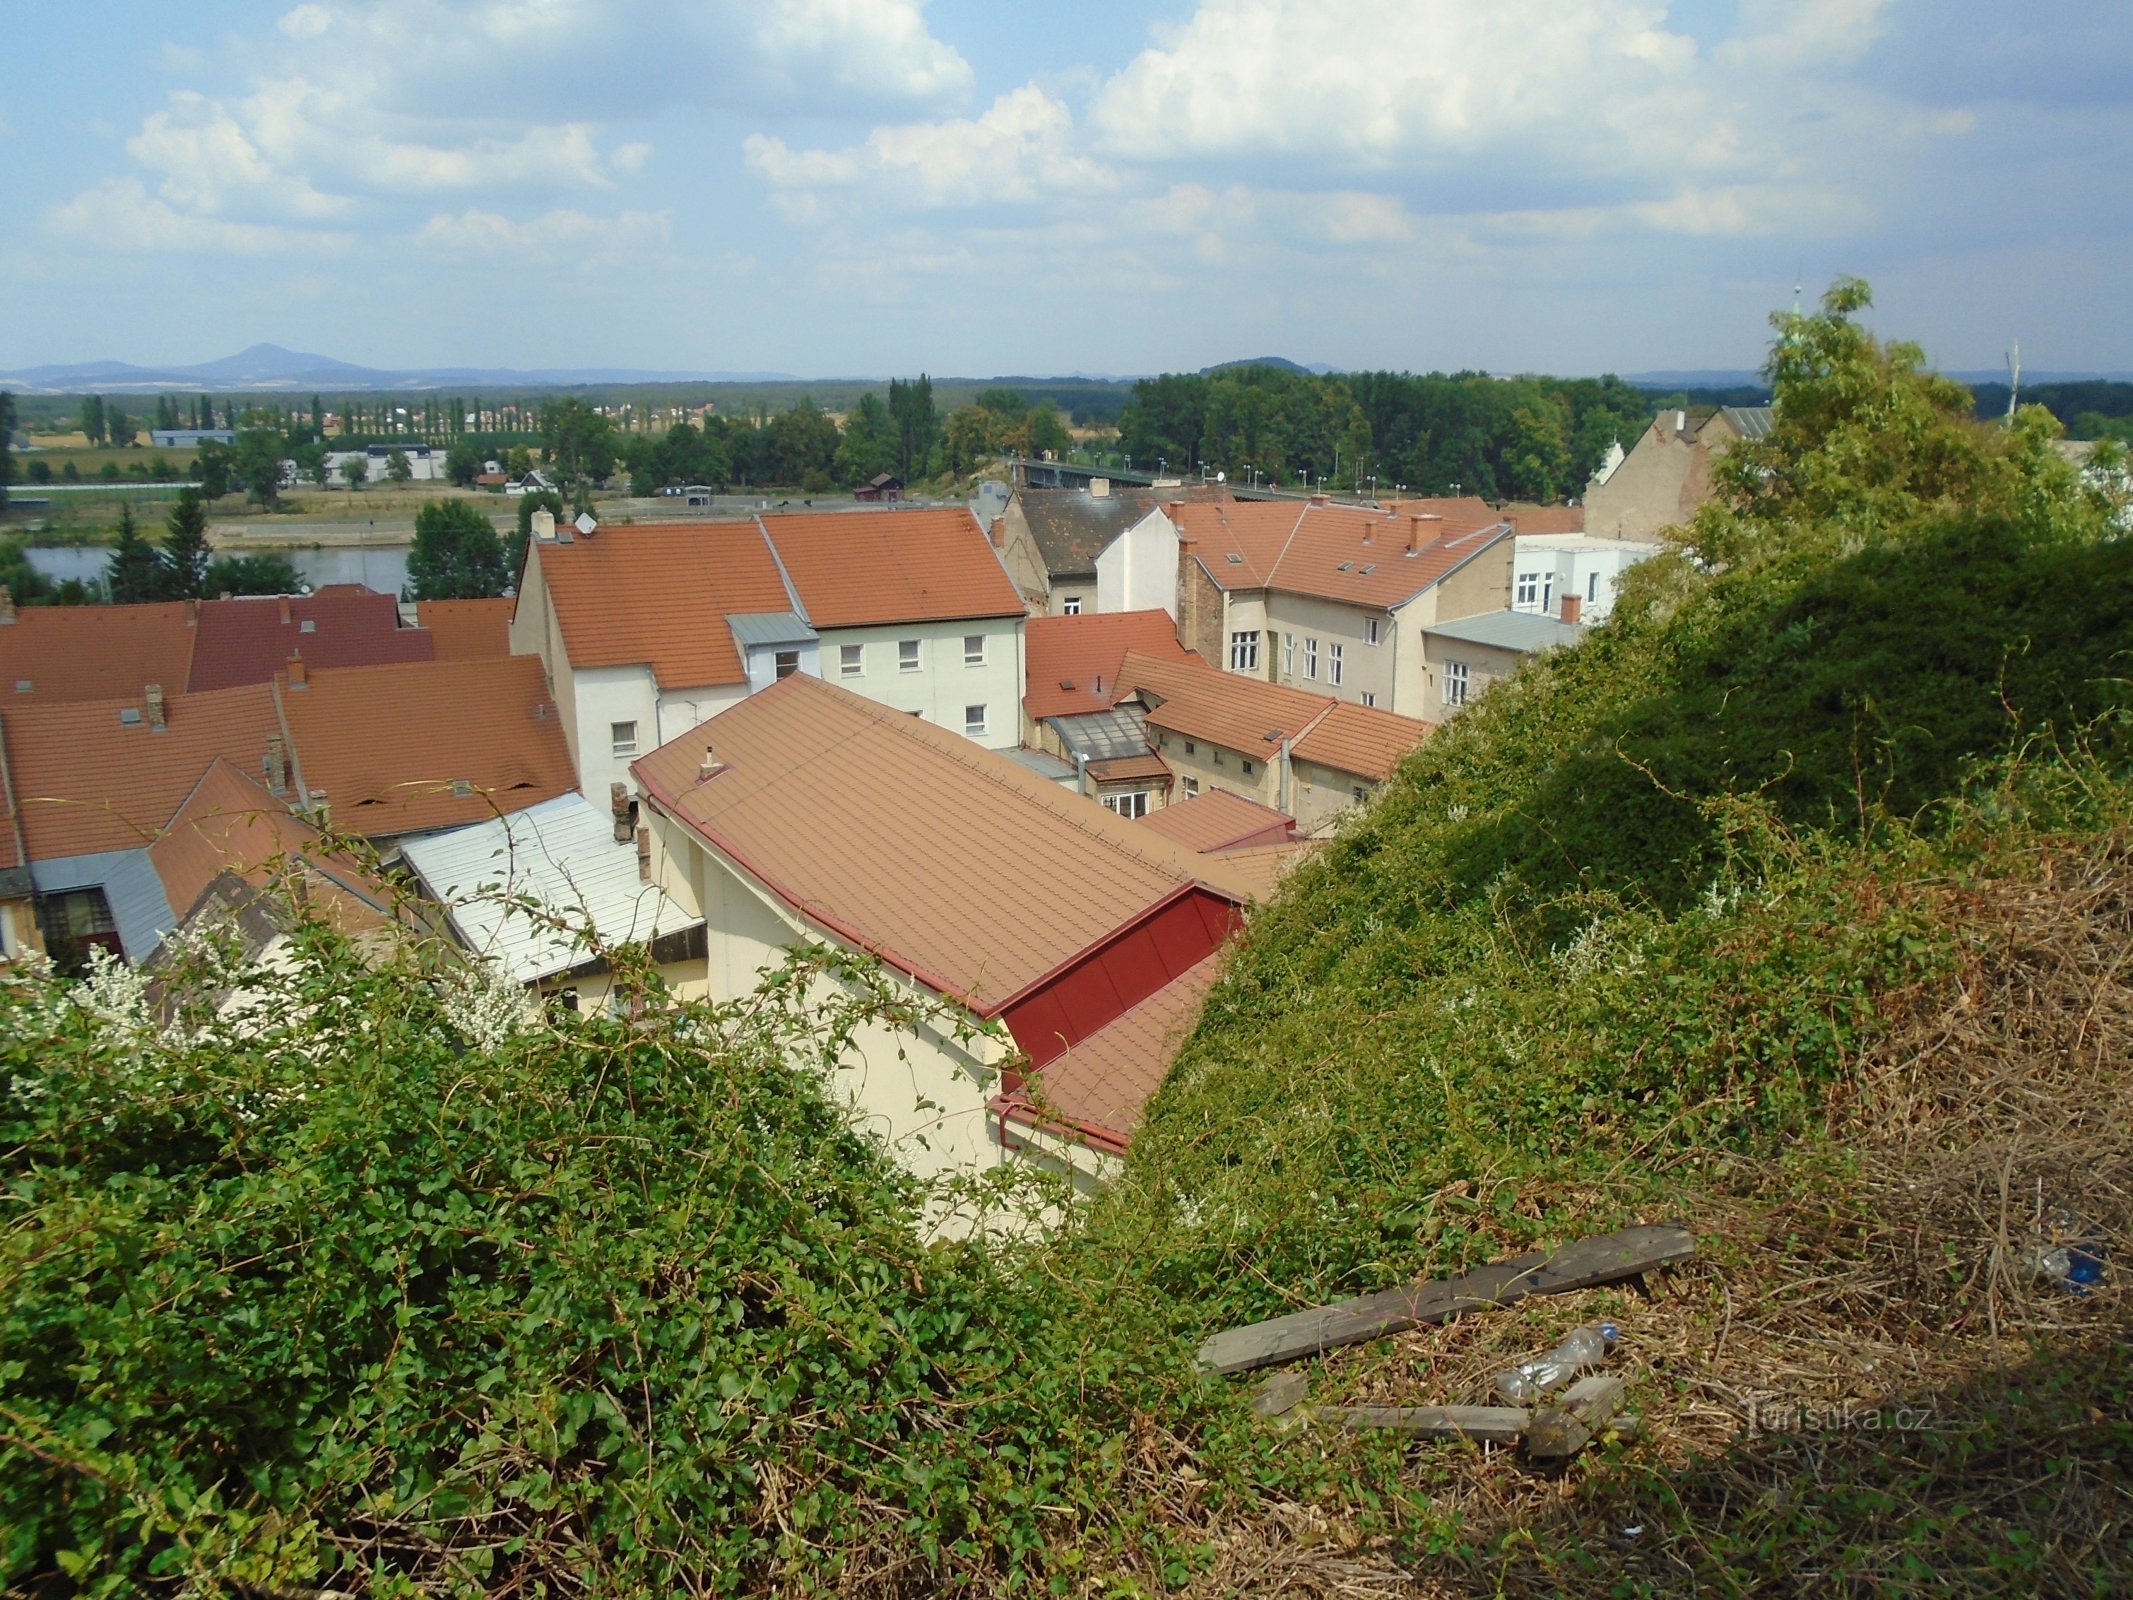 Widok z Hláski (Roudnice nad Labem)